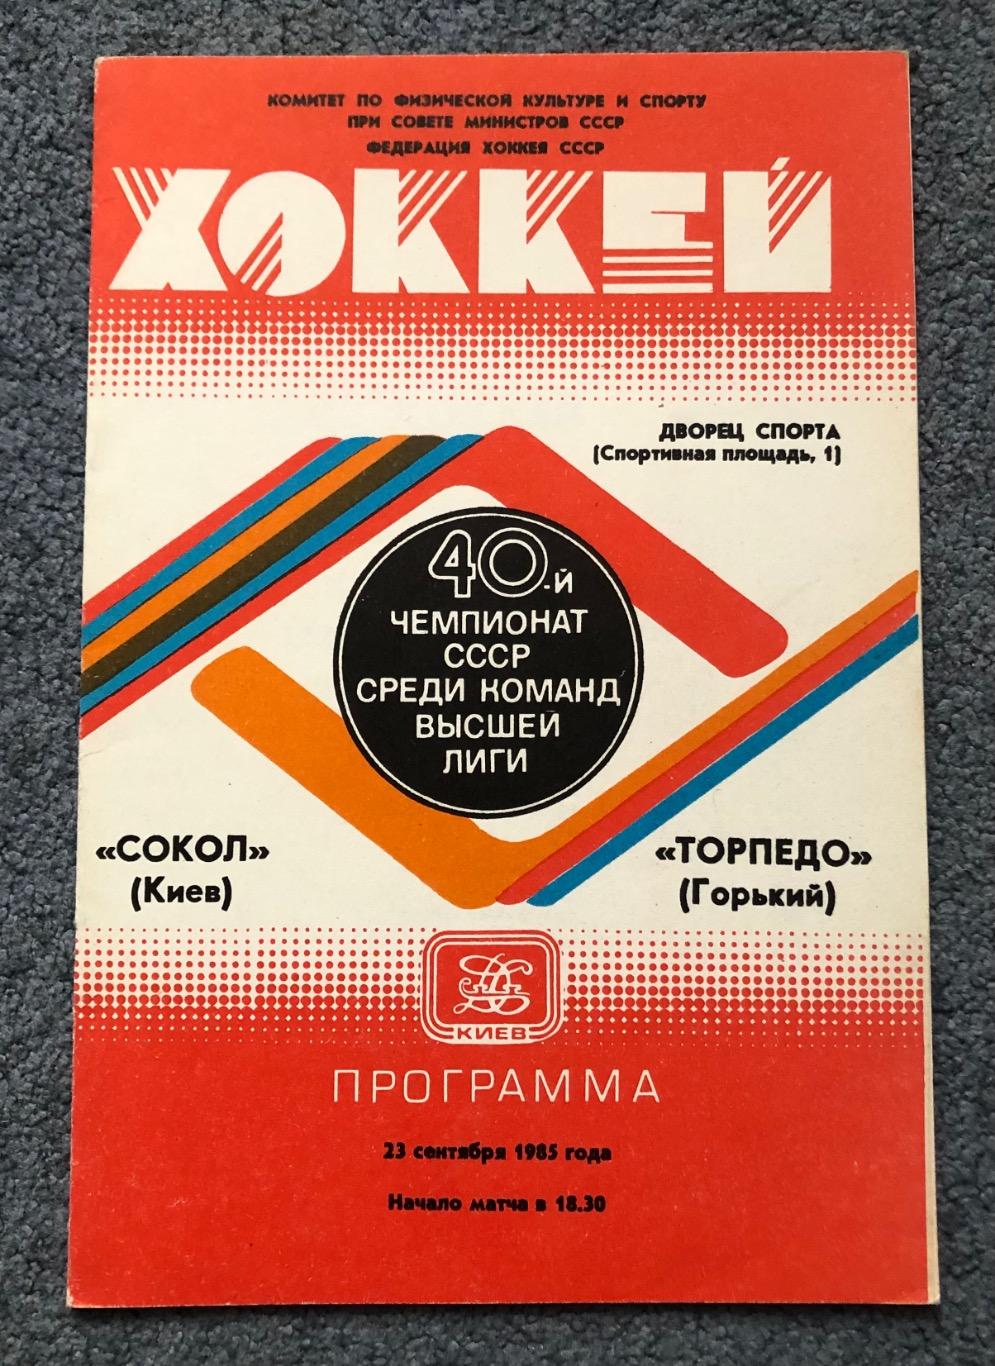 Сокол Киев - Торпедо Горький, 23.09.1985